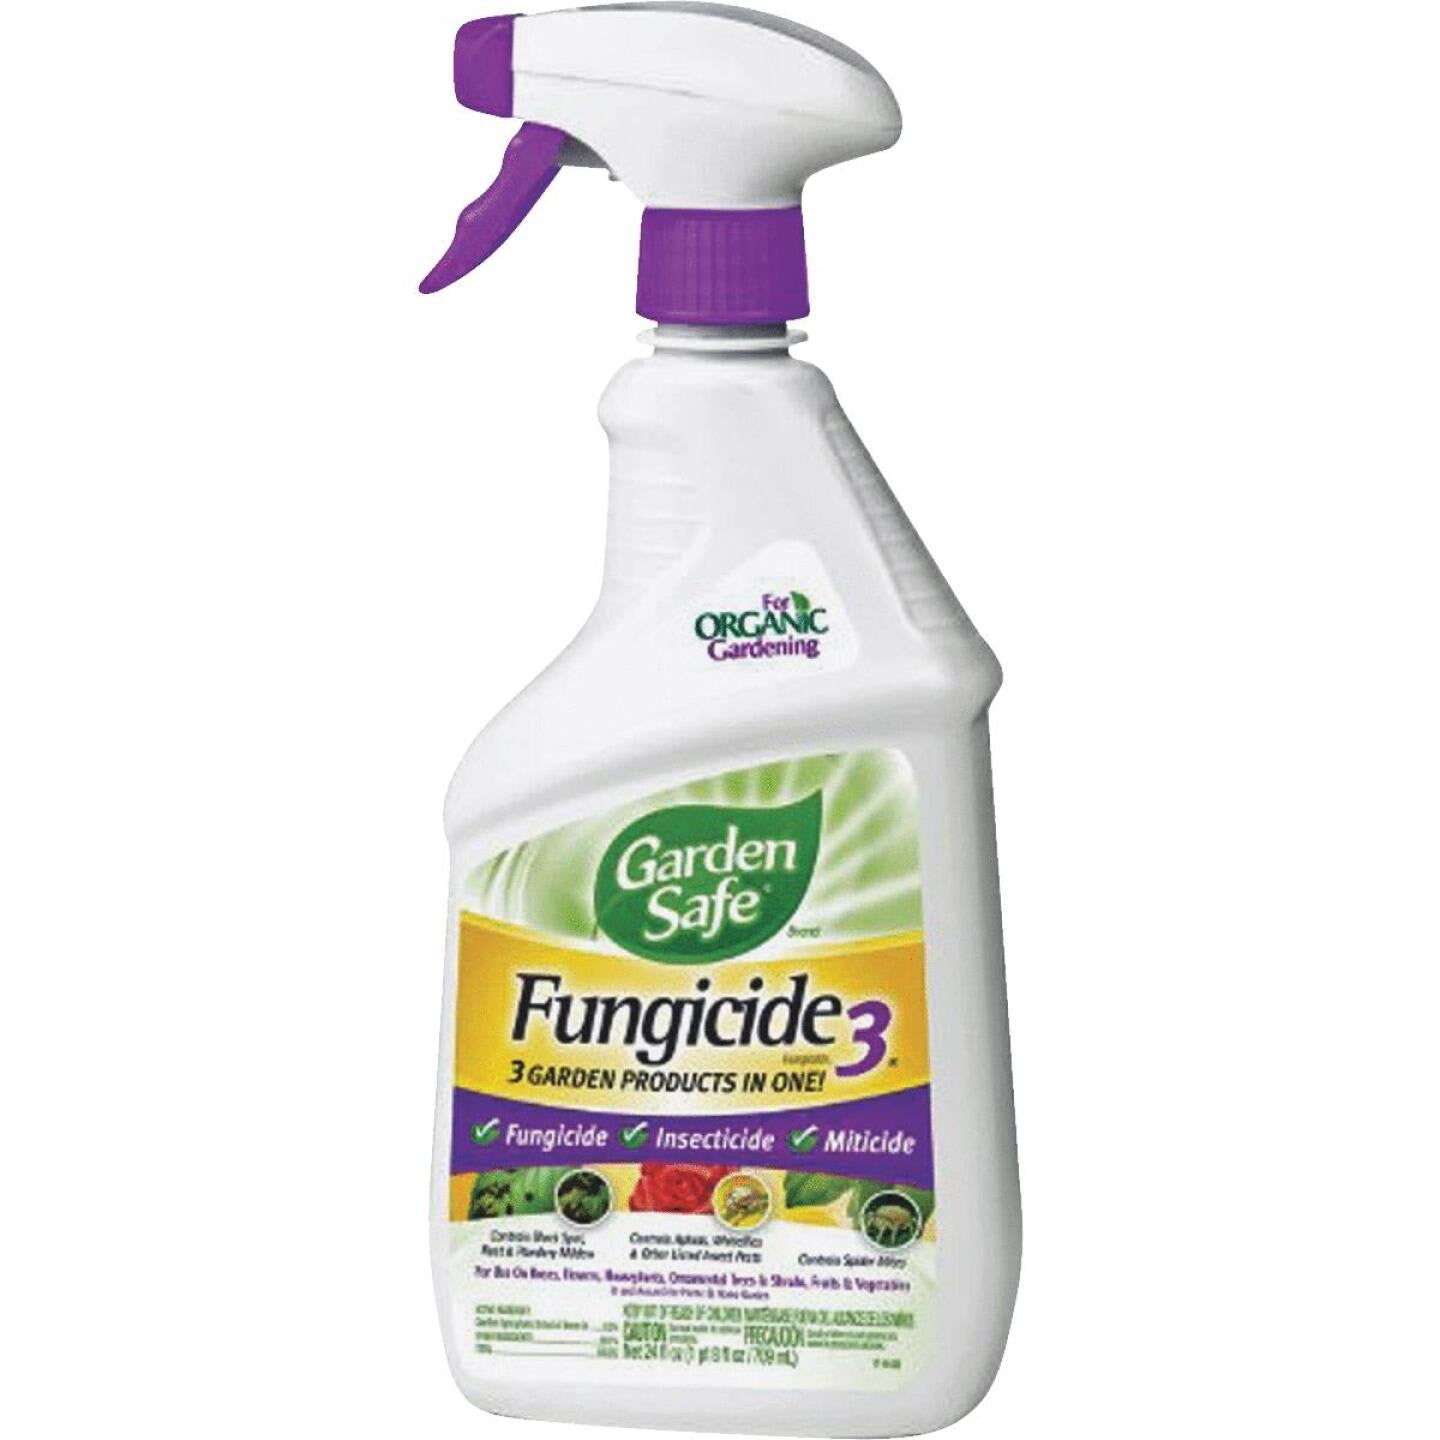 Garden Safe, Garden Safe Fungicide 3 24 Oz. Ready To Use Trigger Spray Fungicide